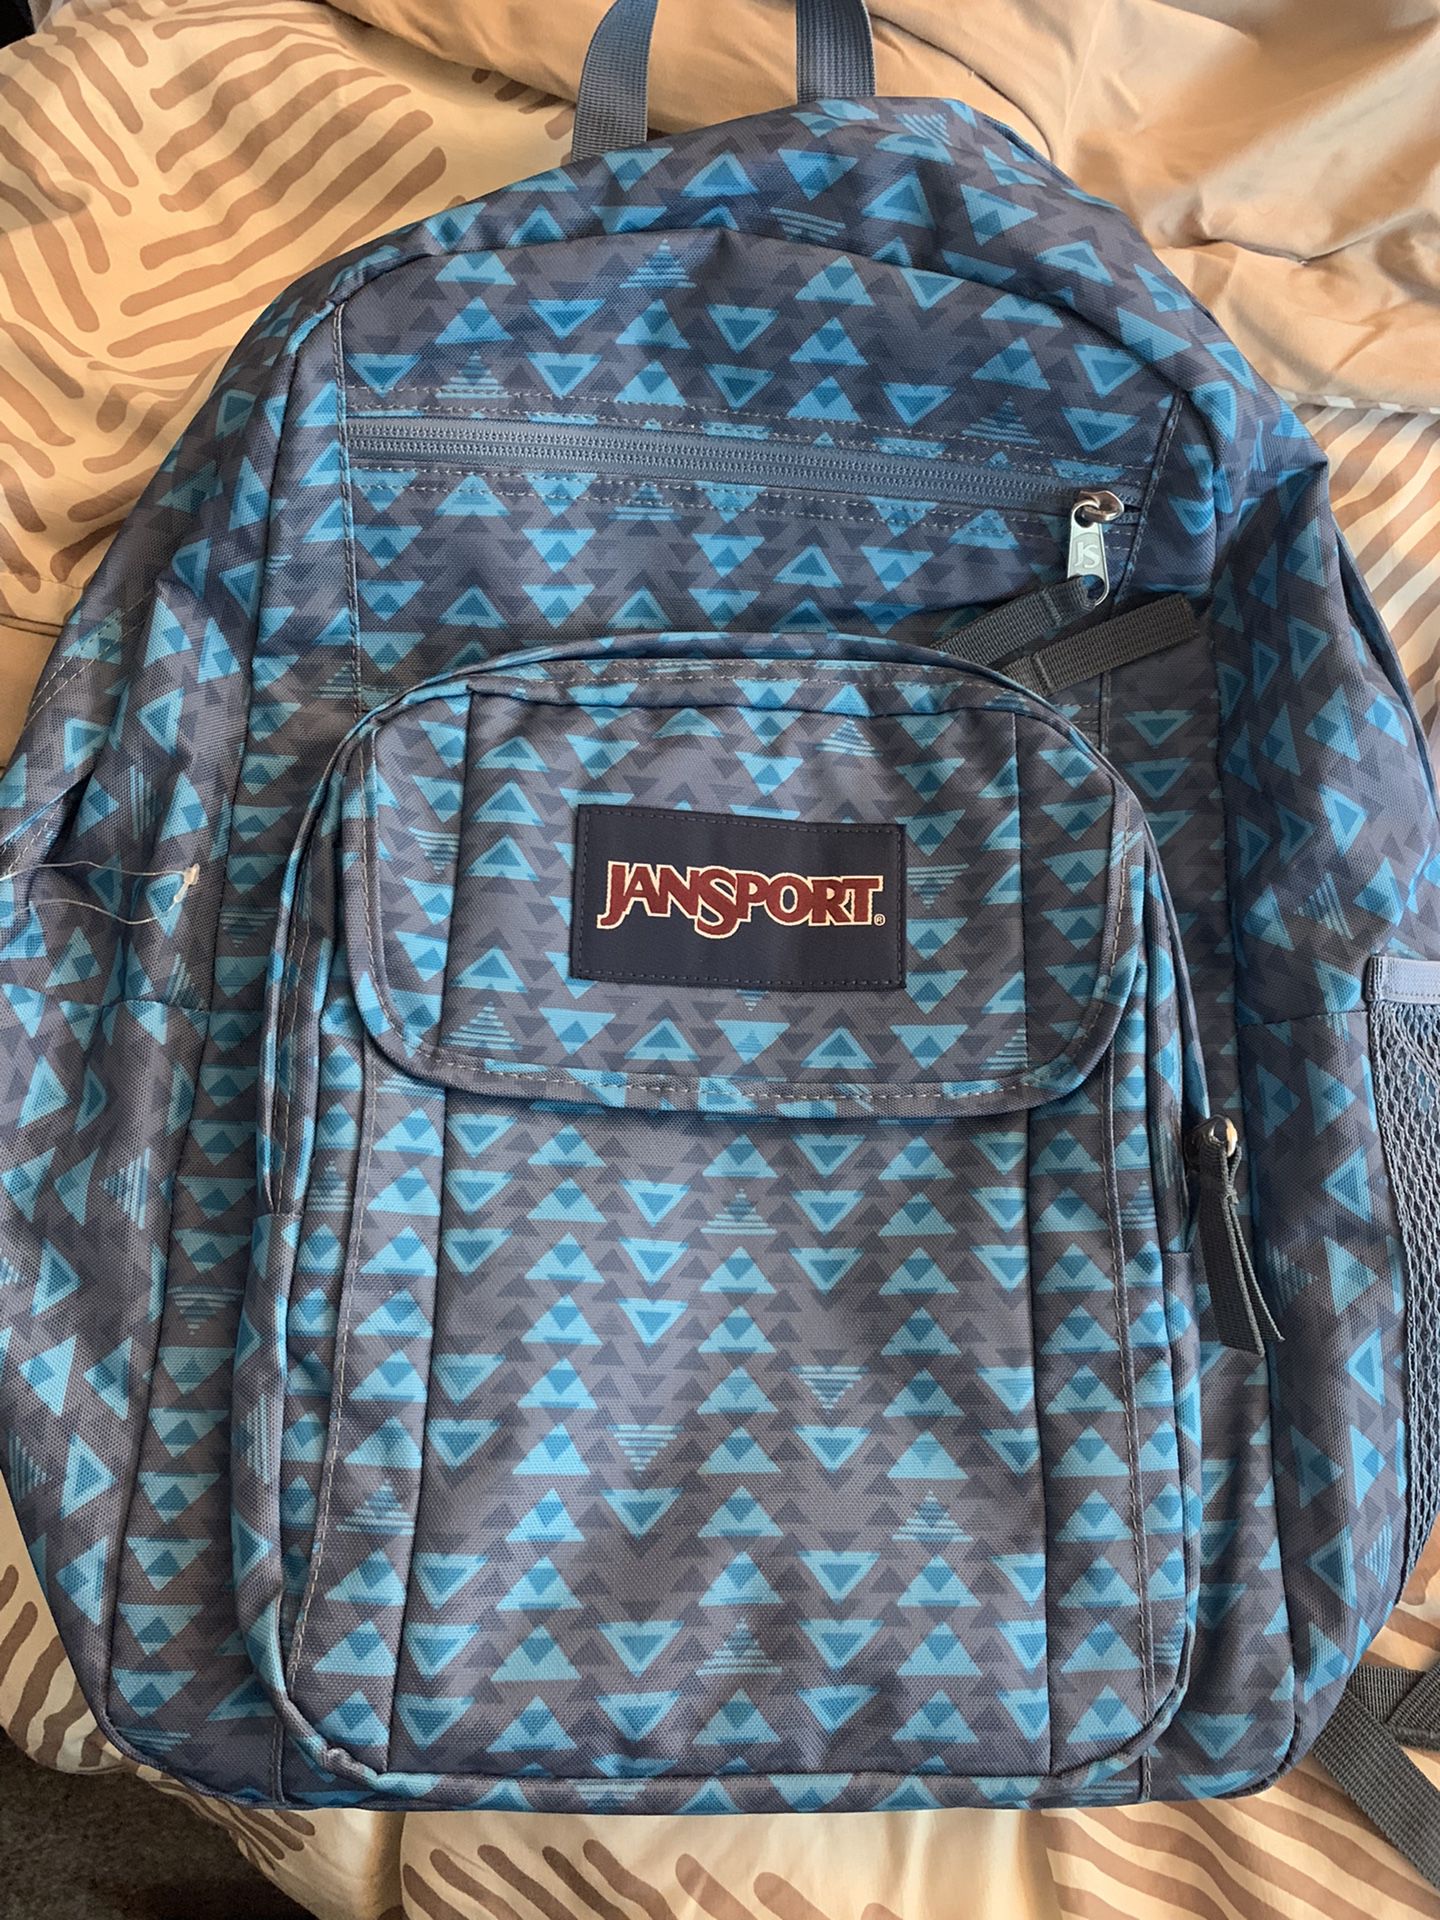 JANSPORT Big Student Backpack